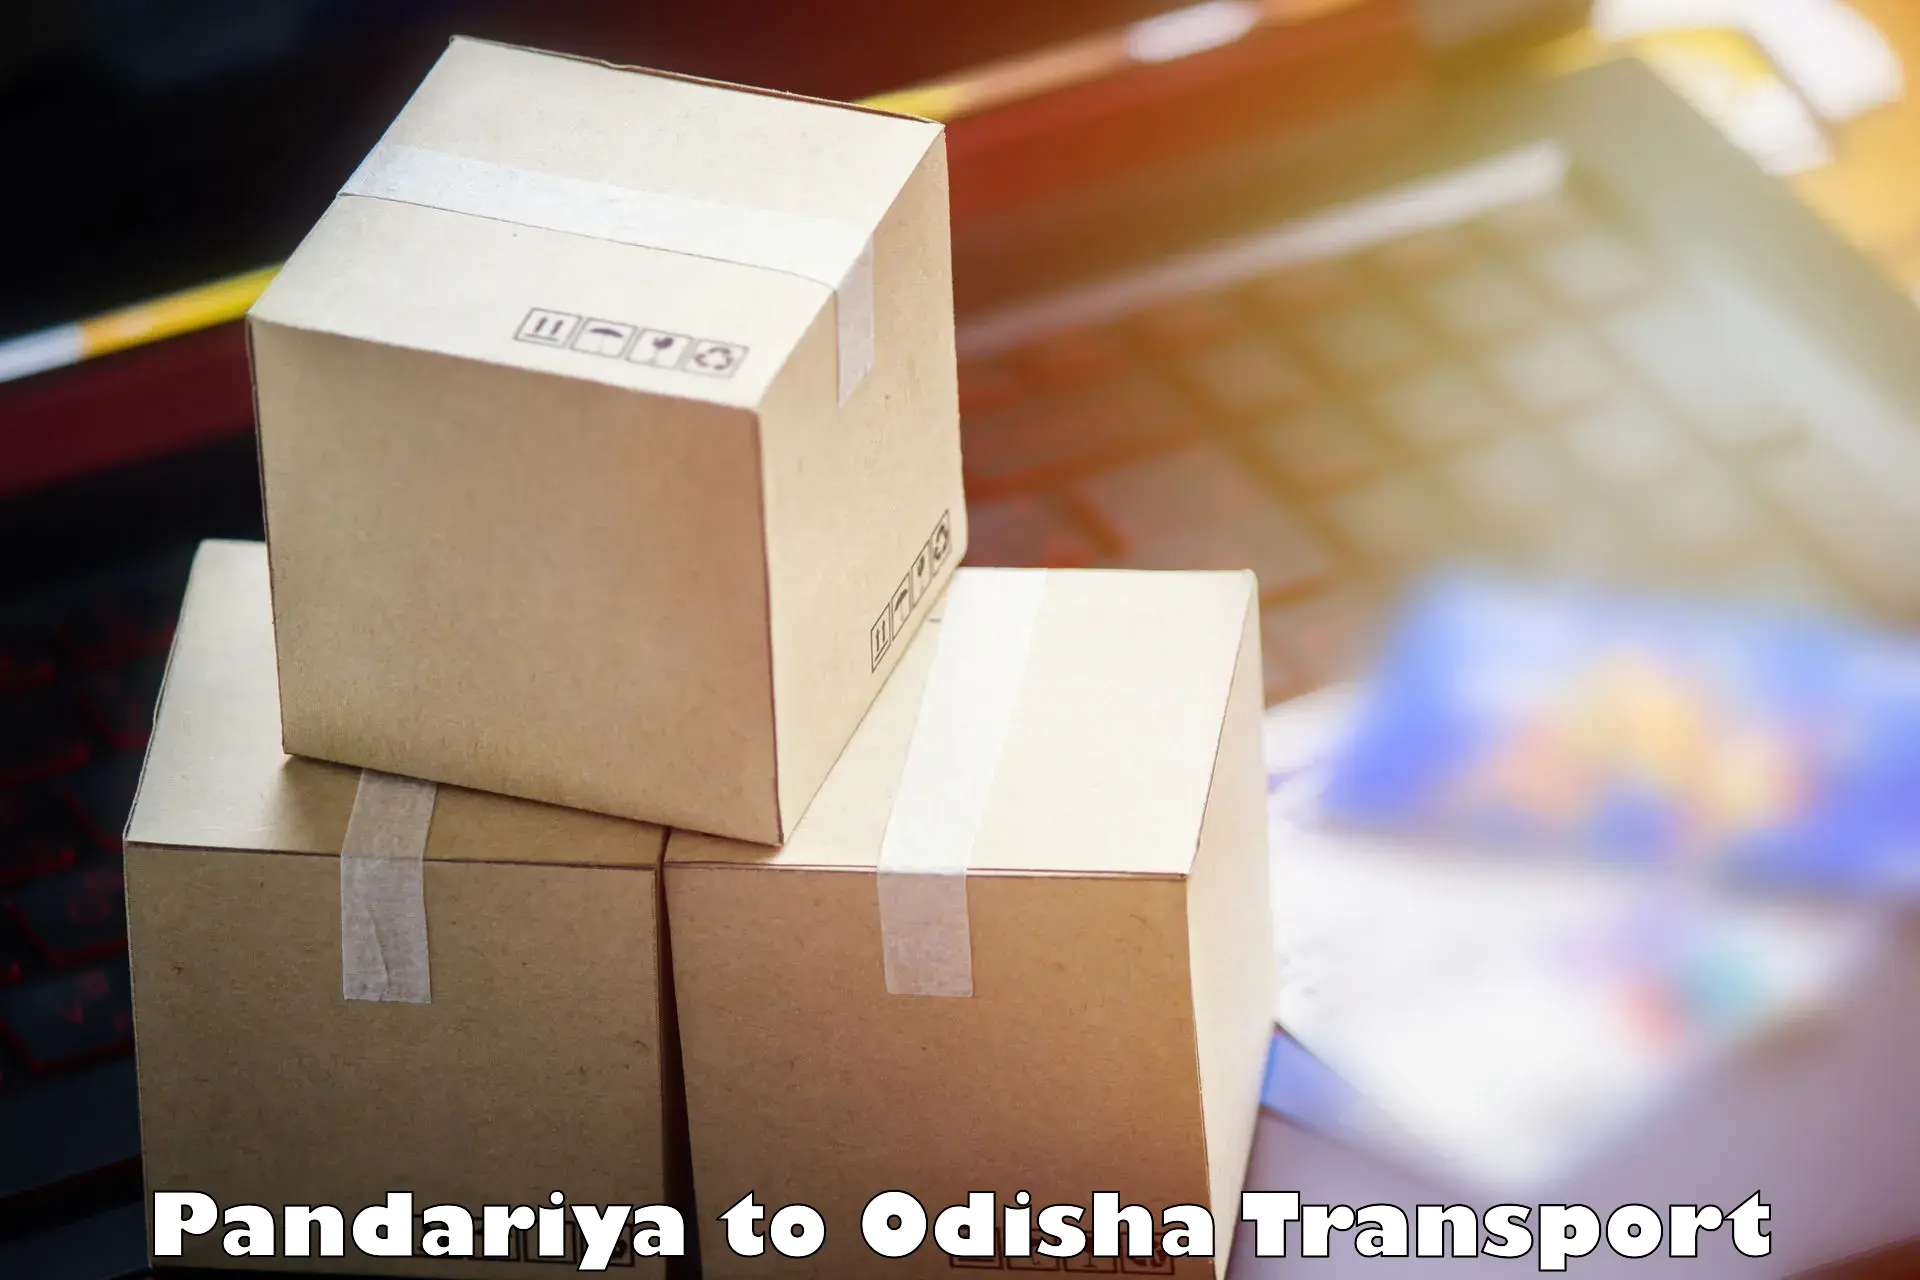 Cargo transportation services Pandariya to Baleswar